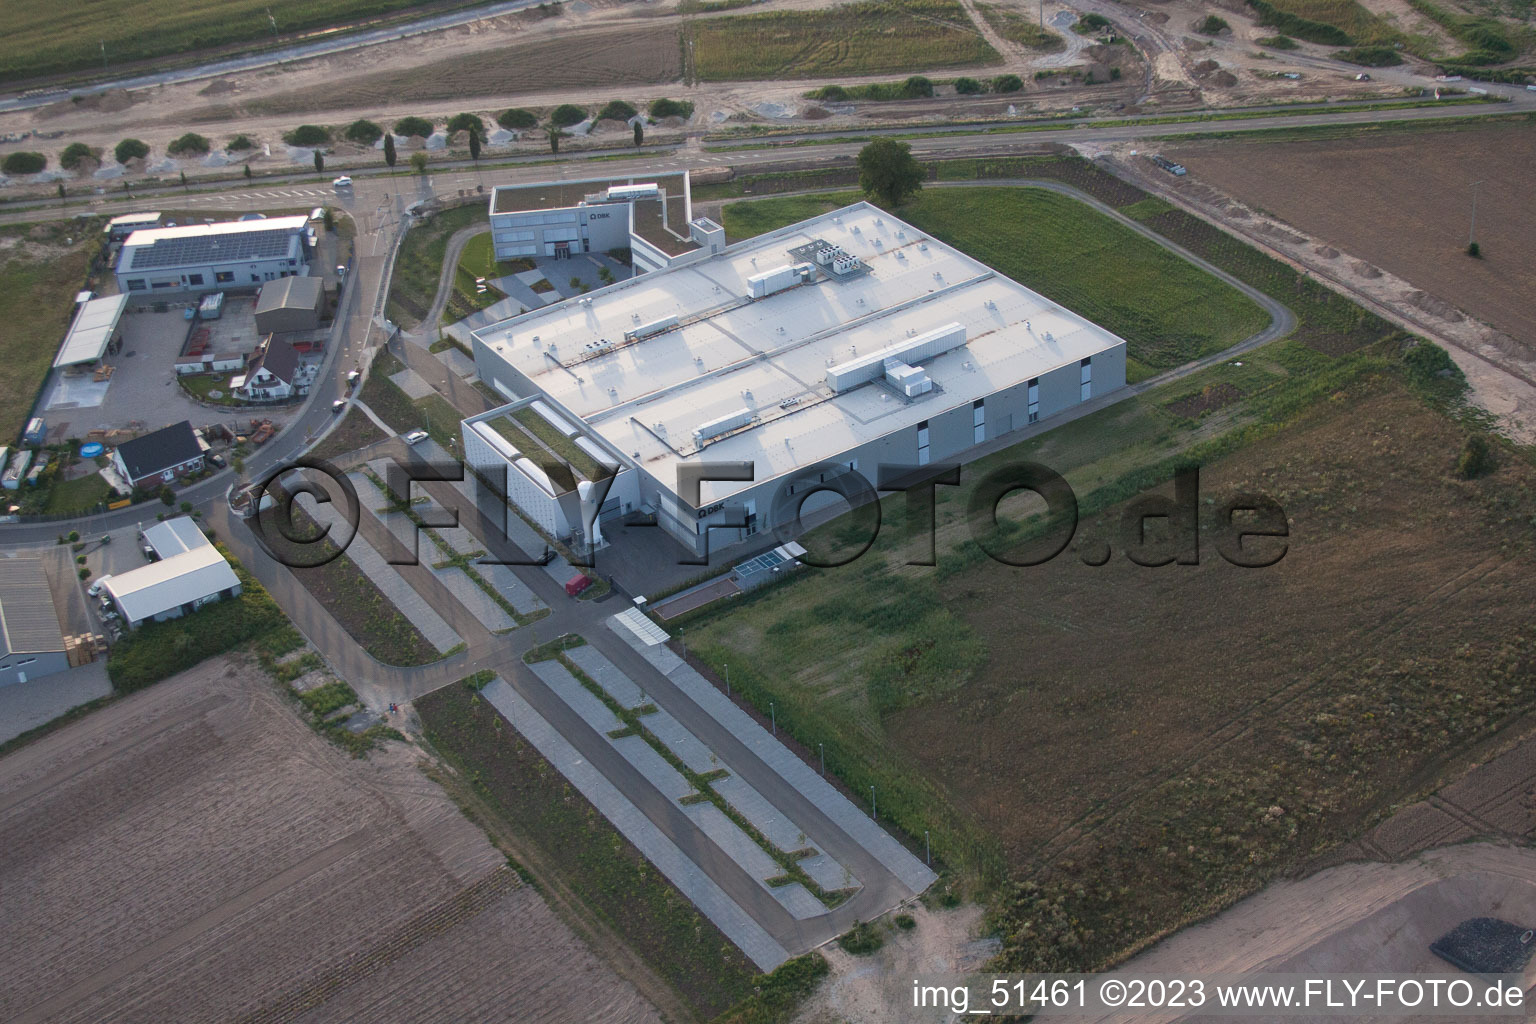 Zone commerciale Nord, nouveau bâtiment DBK à Rülzheim dans le département Rhénanie-Palatinat, Allemagne d'un drone